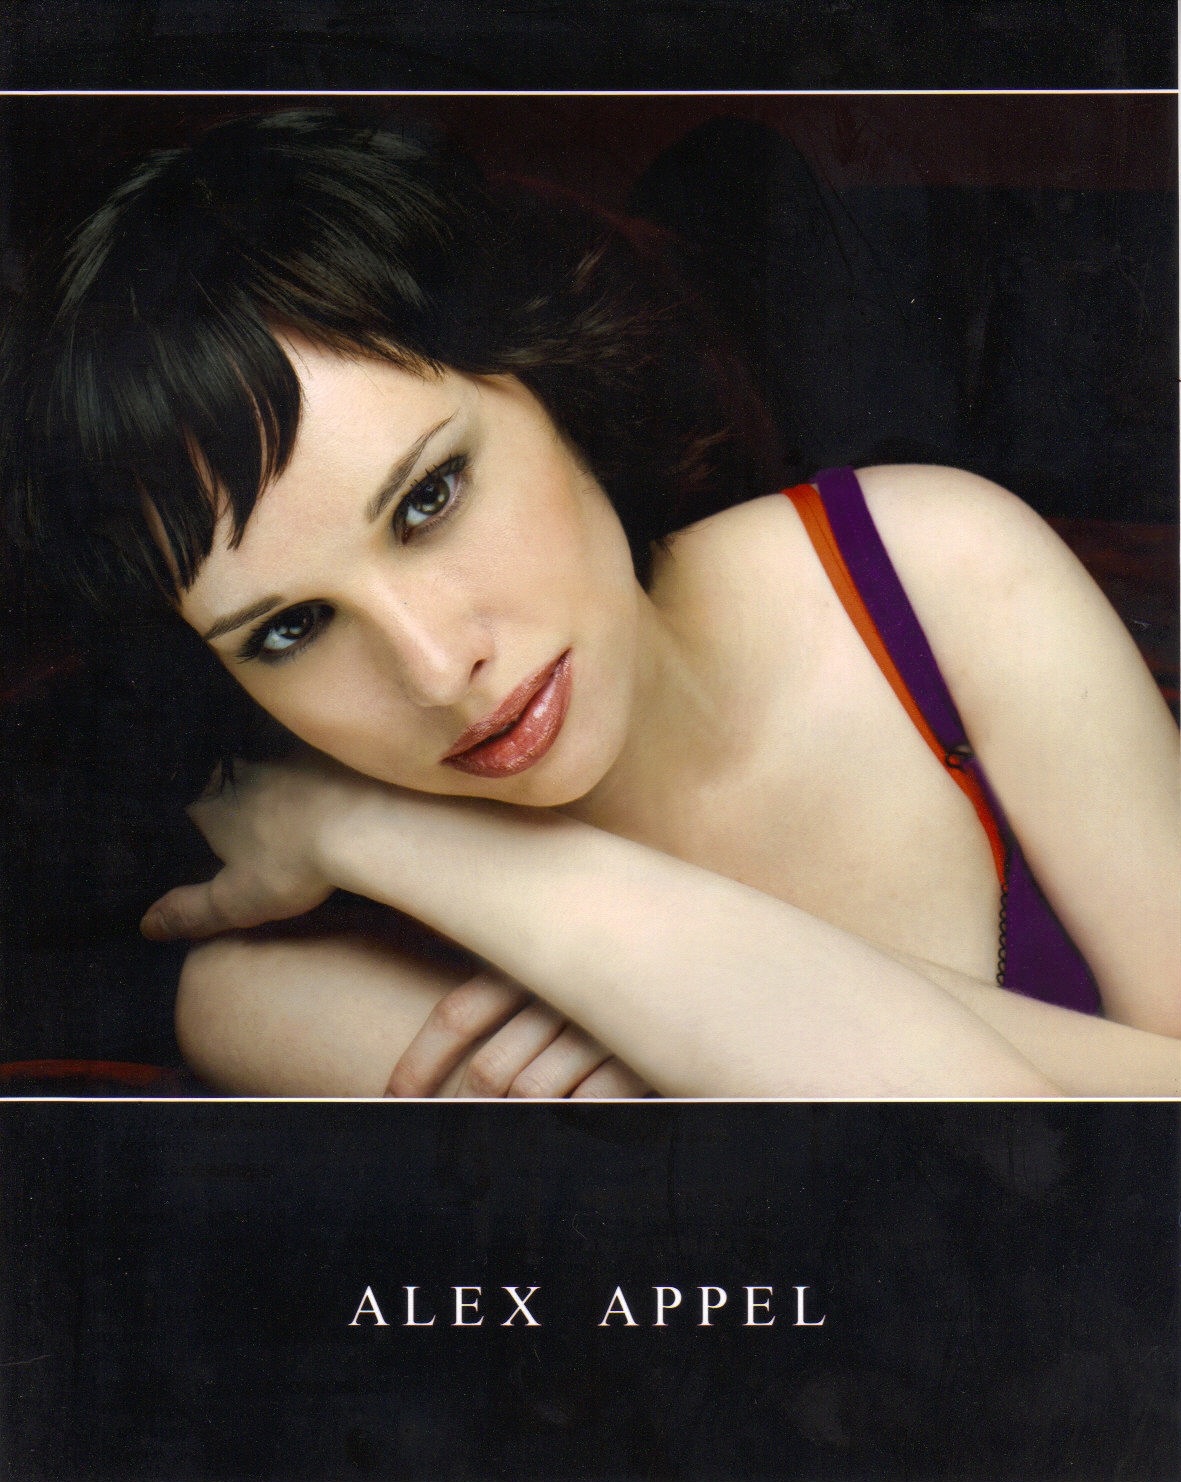 Alex Appel